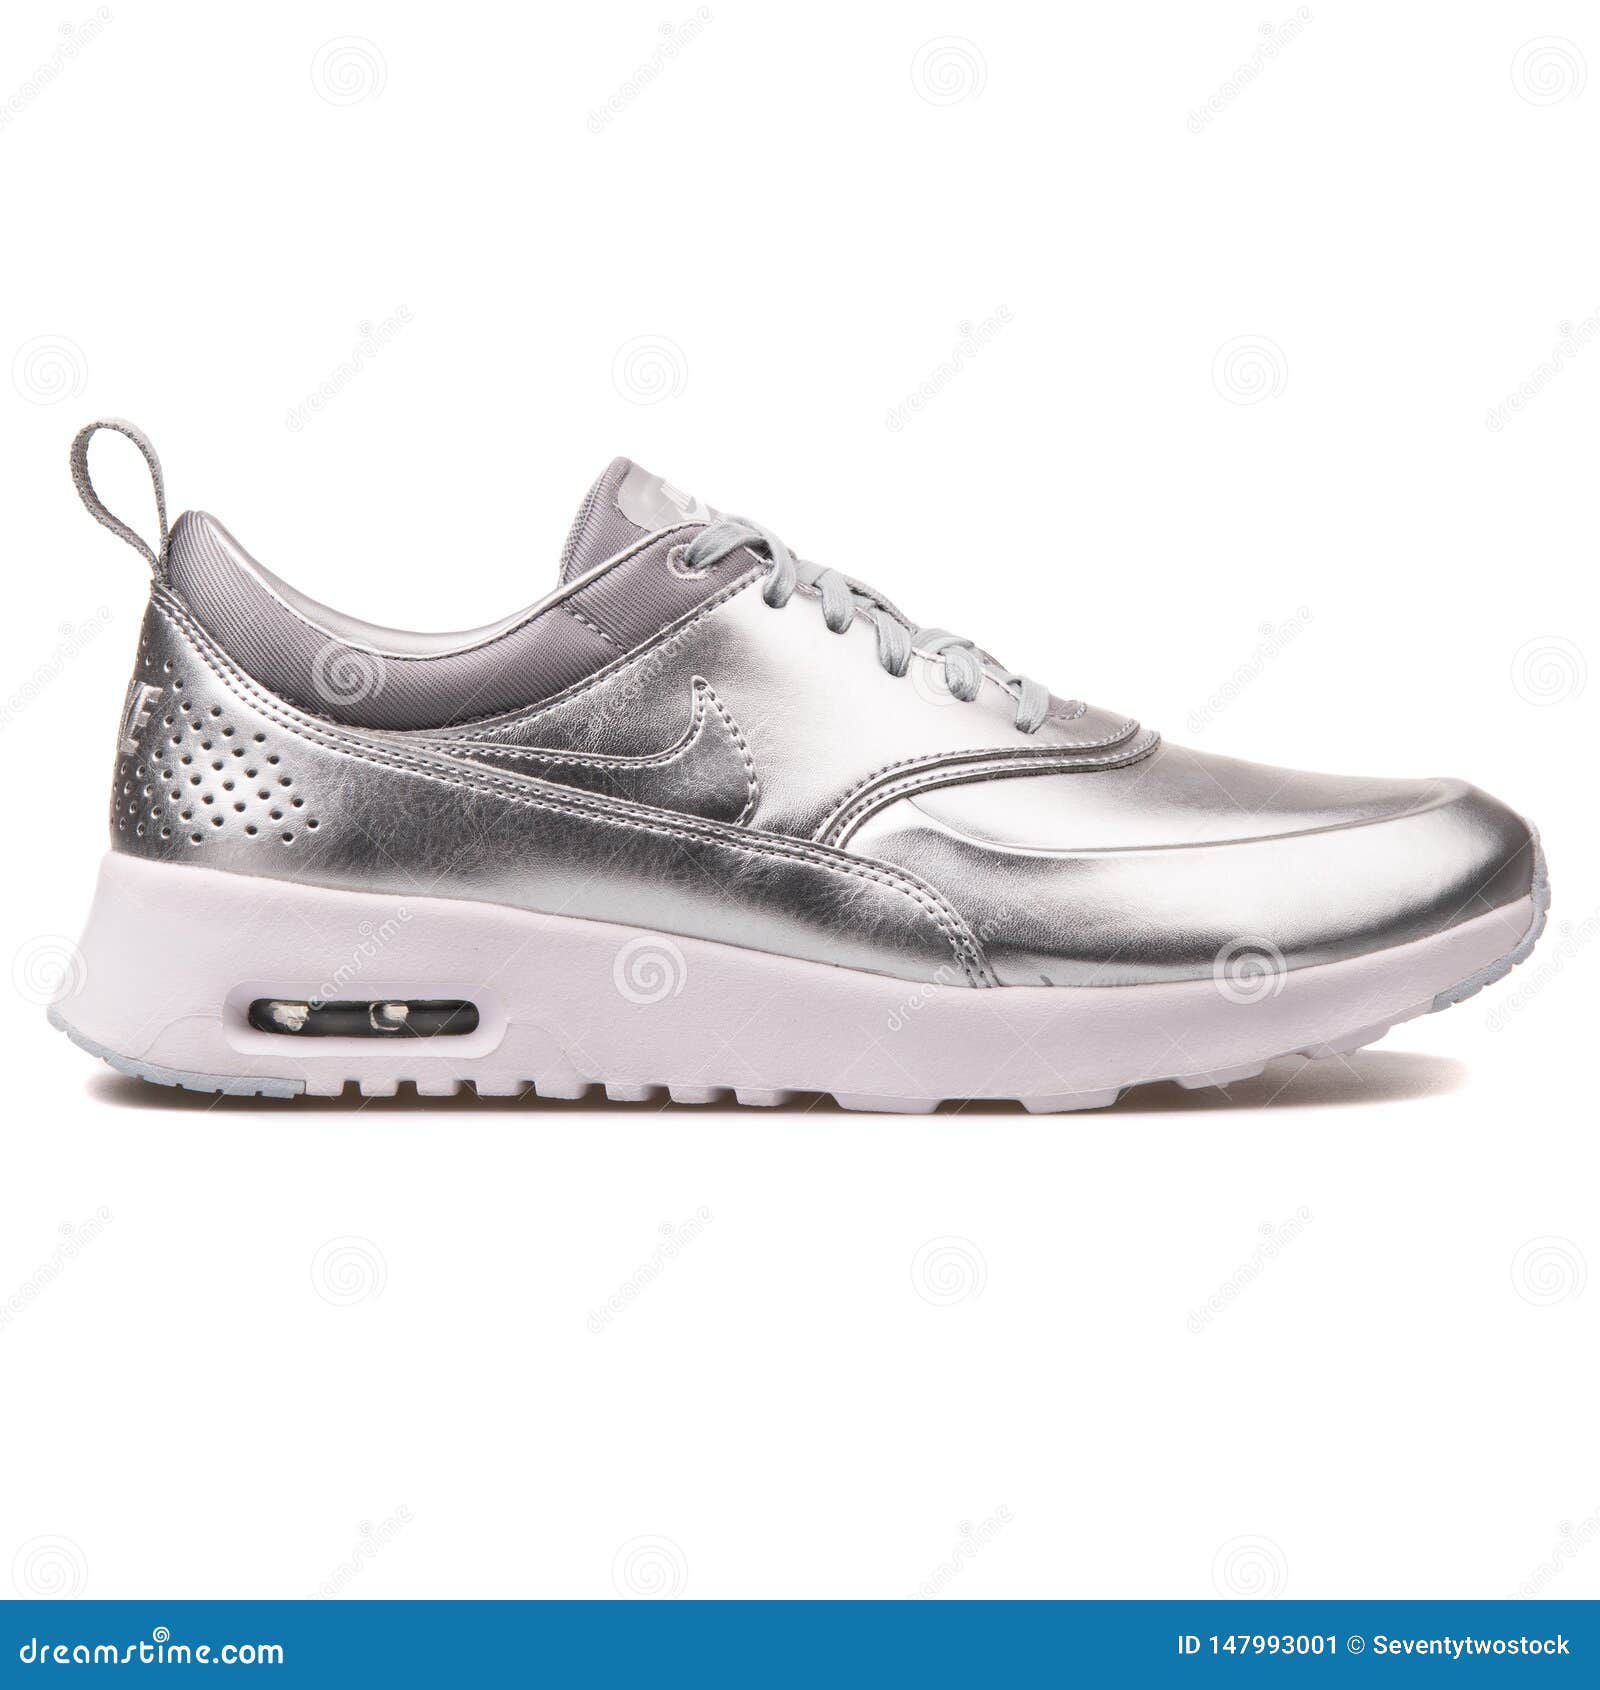 De Zilveren Tennisschoen Van Nike Air Max Redactionele Foto - Image of manier, 147993001